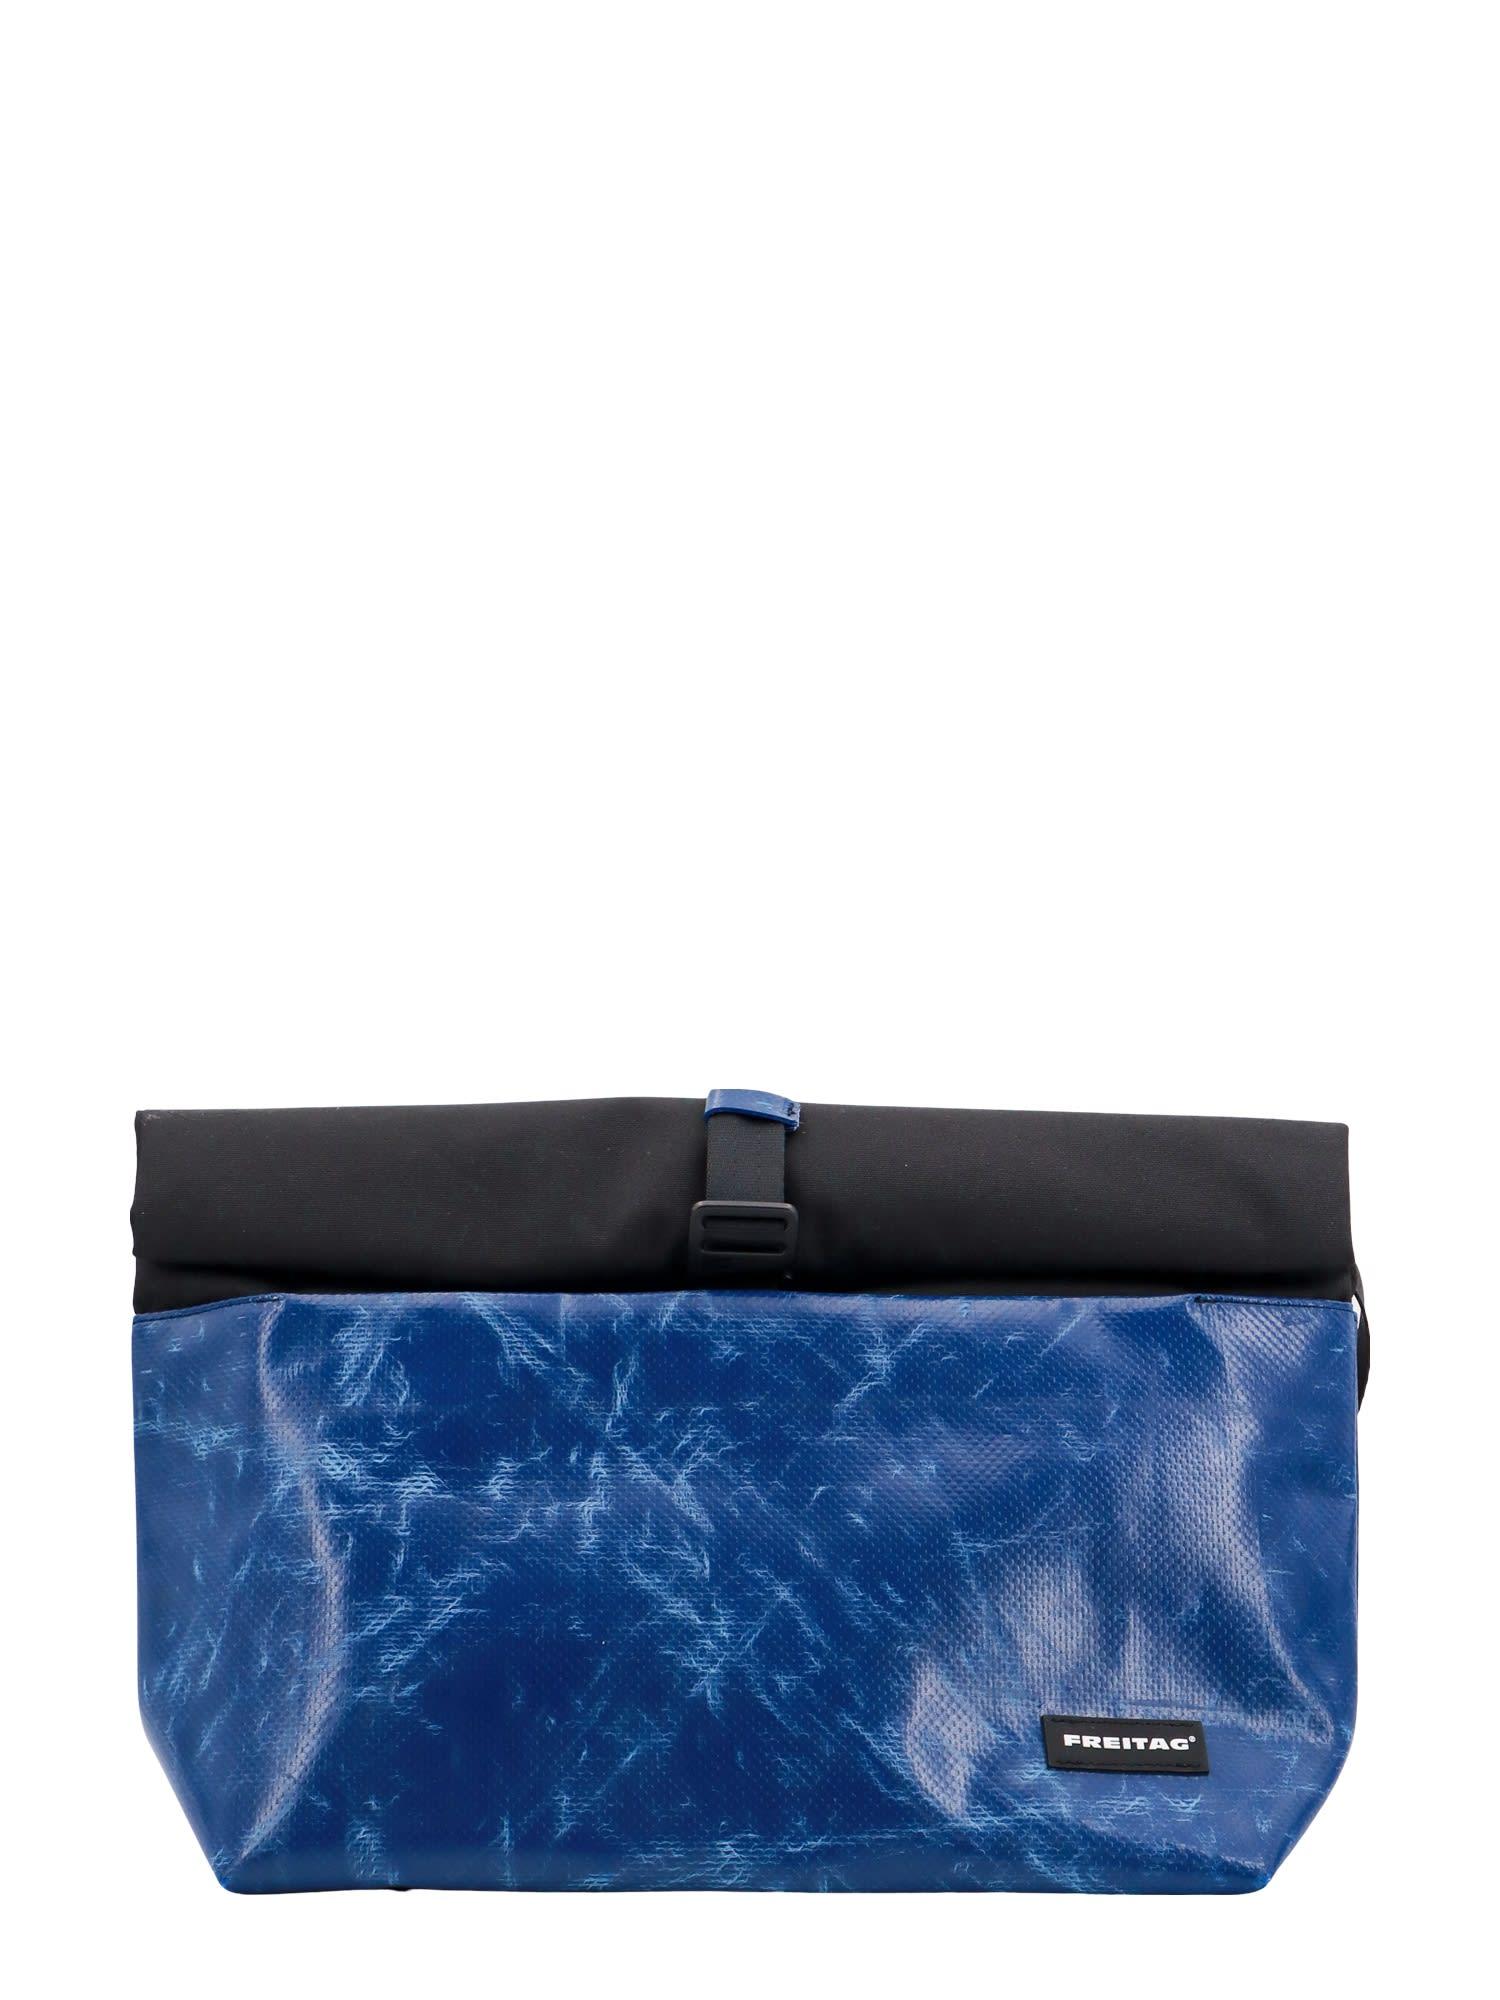 Freitag Rollin Shoulder Bag in Blue for Men | Lyst